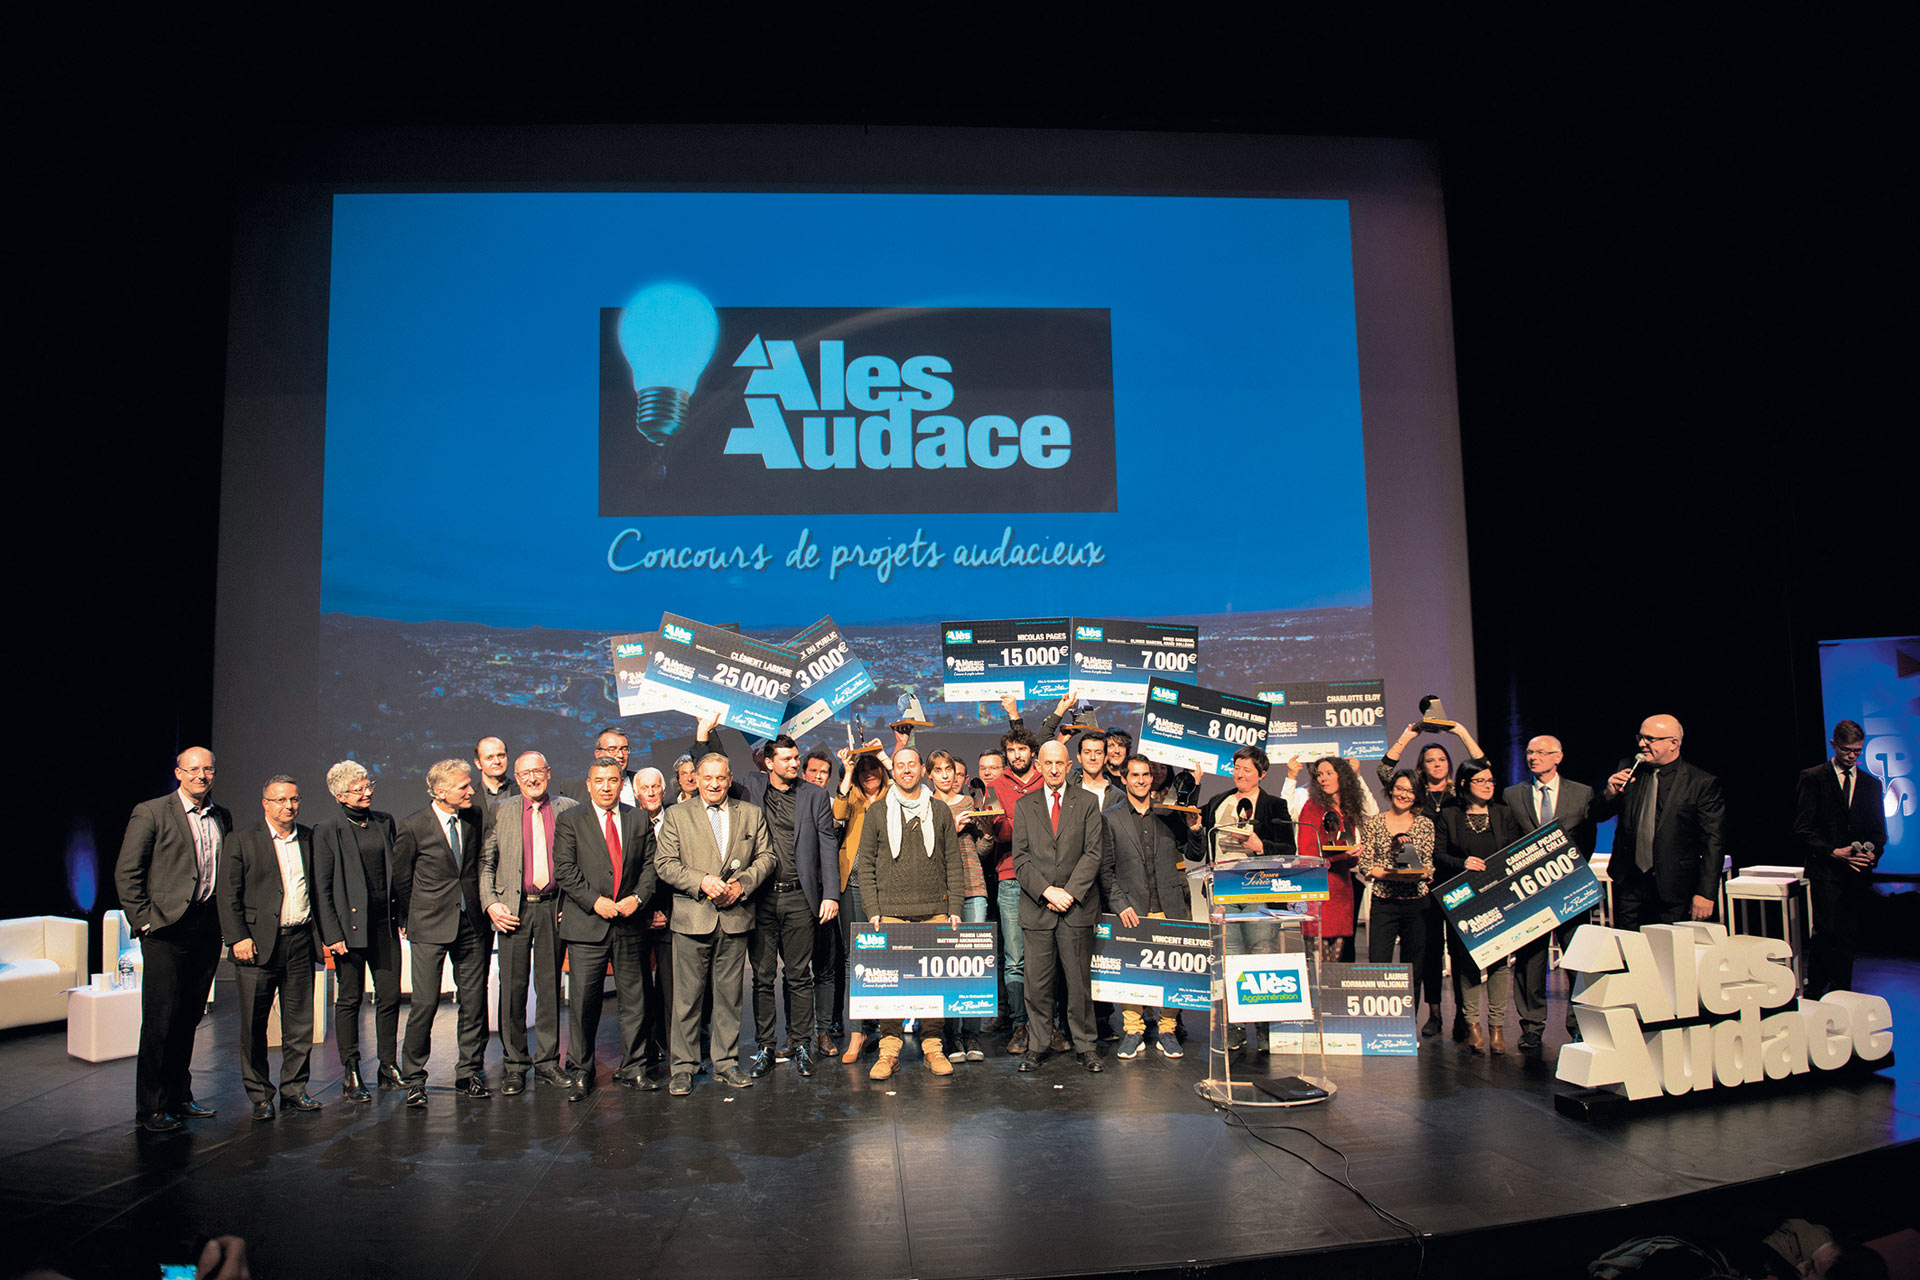 Le 9 décembre, le concours Alès Audace livrera le nom de ses vainqueurs. La soirée dédiée à l’économie, sera organisée au Cratère et désignera également l’entreprise de l’année 2019 en présence d’un invité de prestige